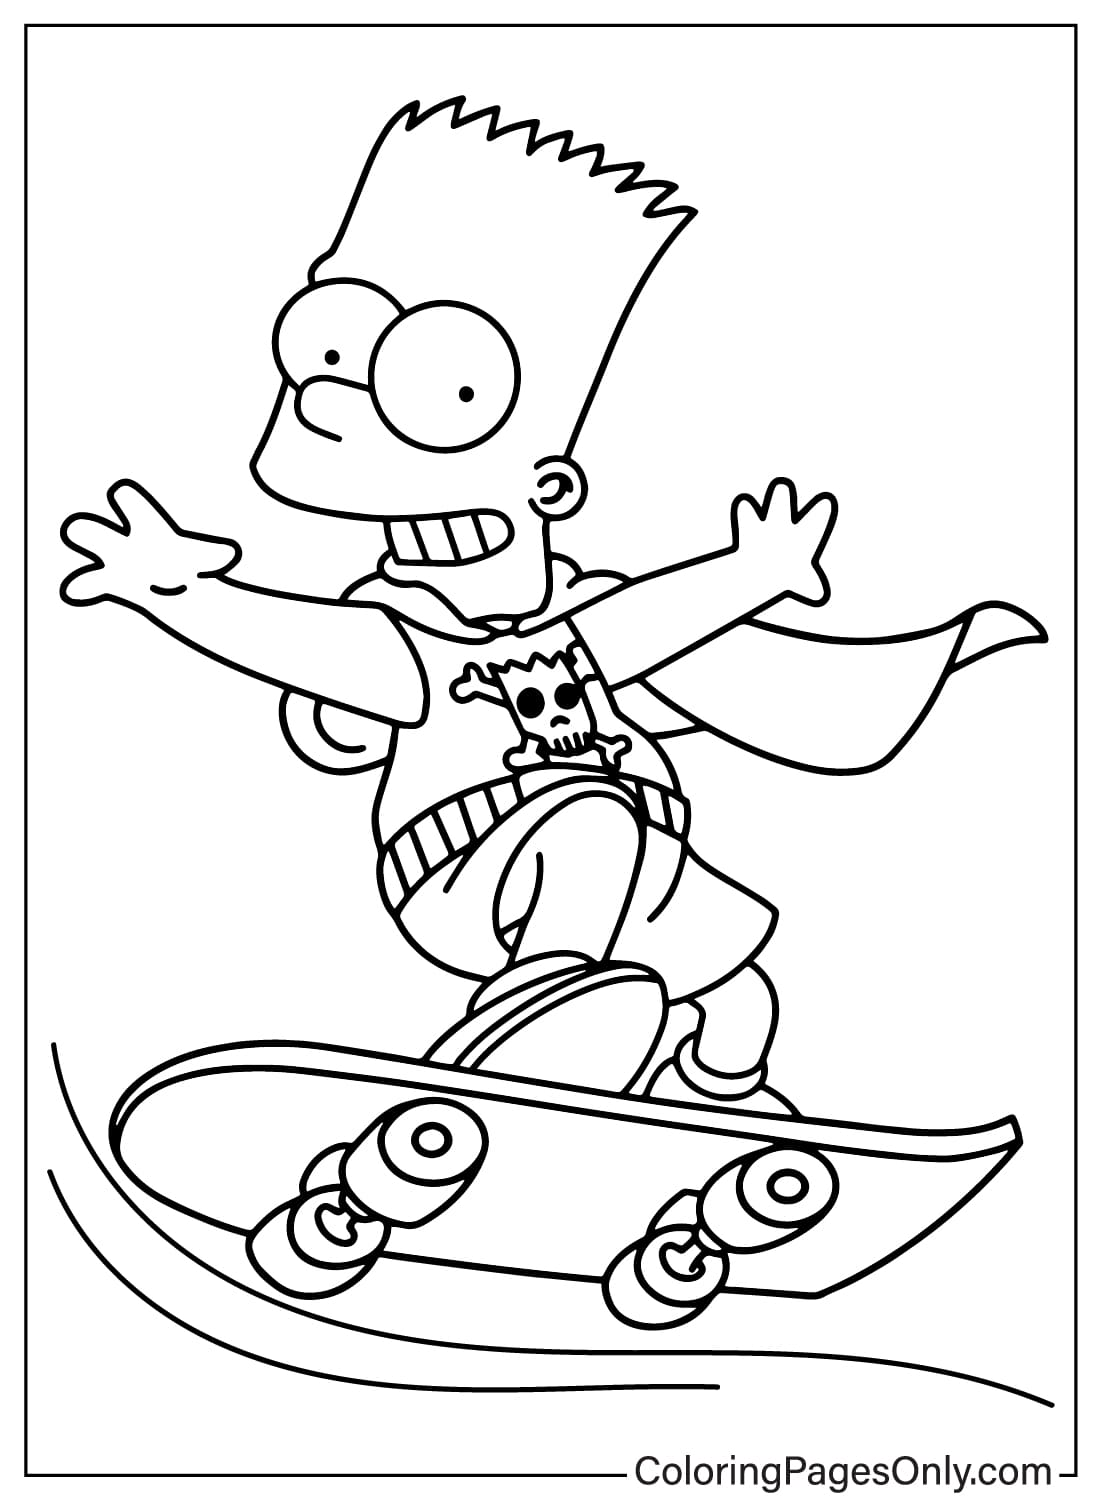 Página para colorir de Bart Simpson dos Simpsons